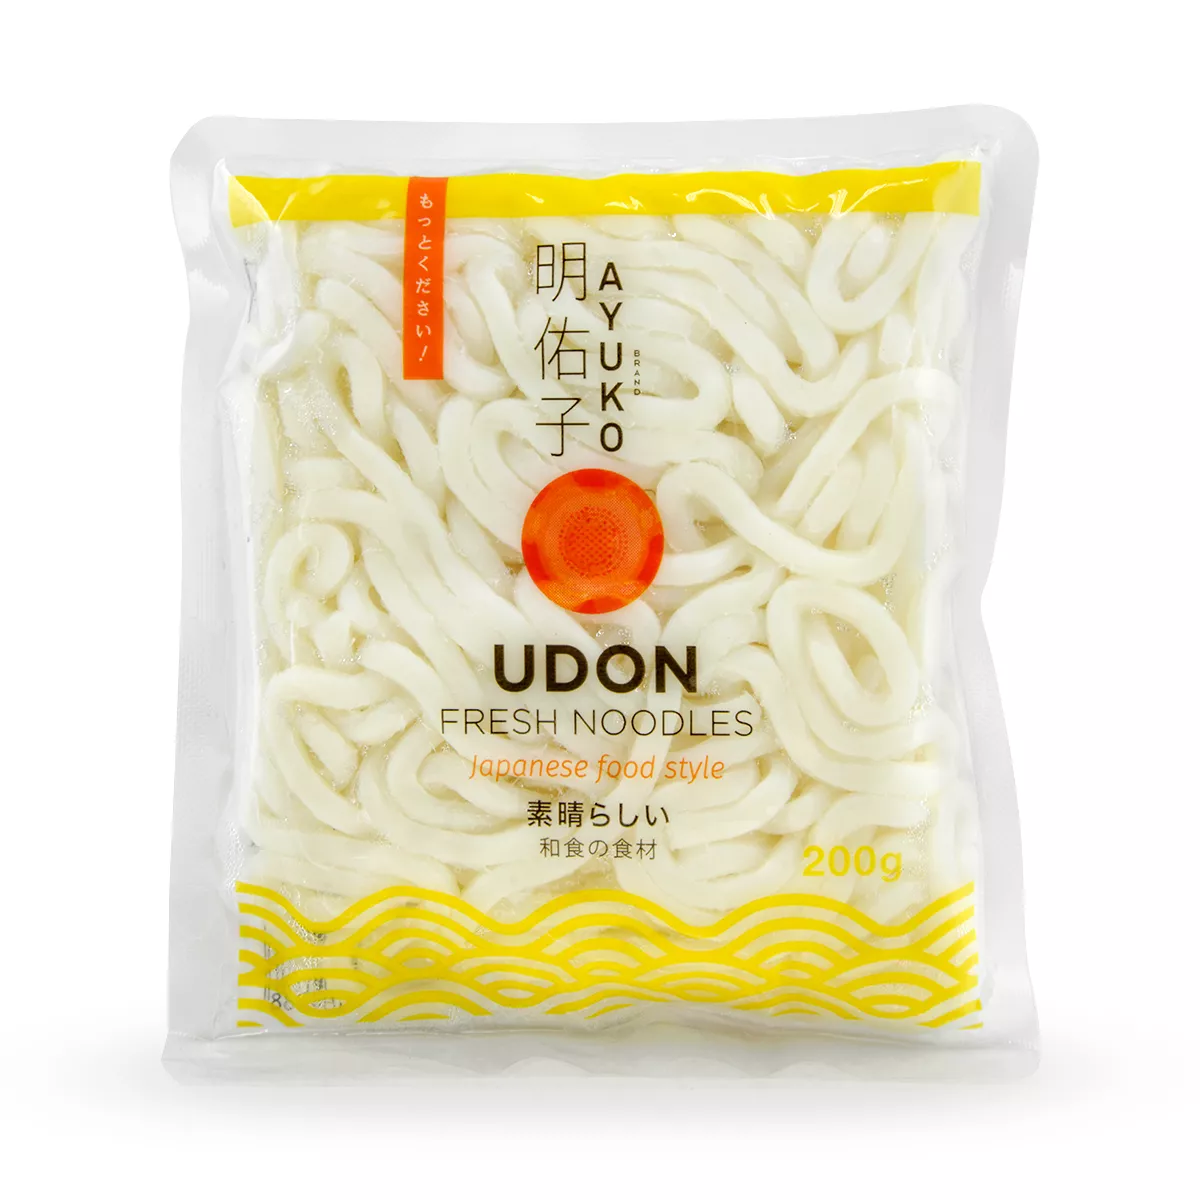 Taitei Udon AYUKO 200g, [],asianfood.ro